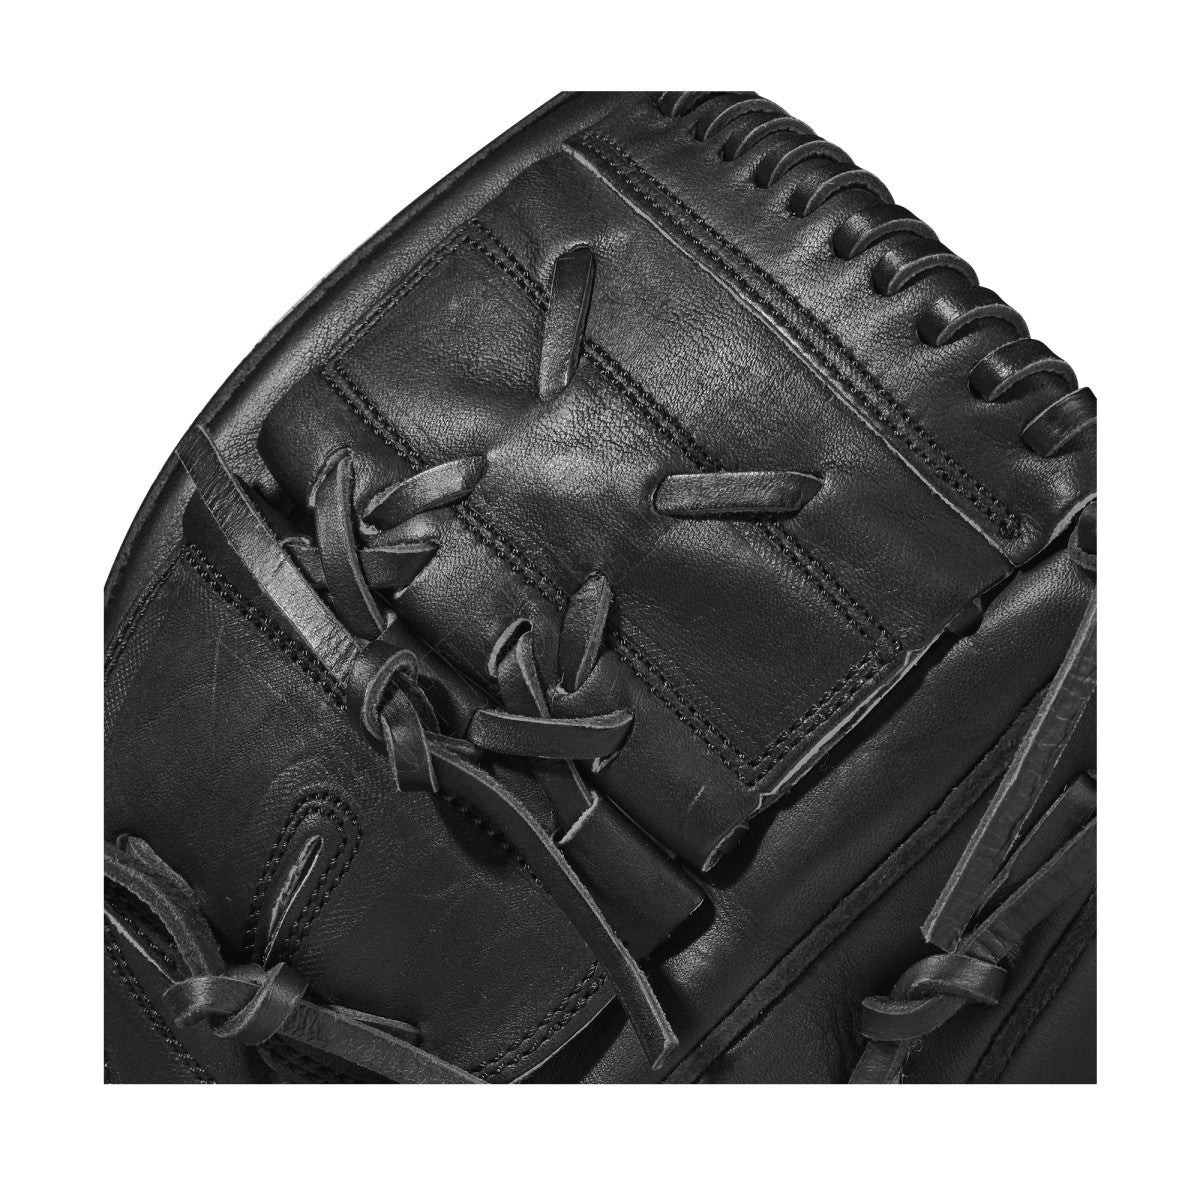 2021 A2000 CK22 GM 11.75" Pitcher's Baseball Glove ● Wilson Promotions - -5